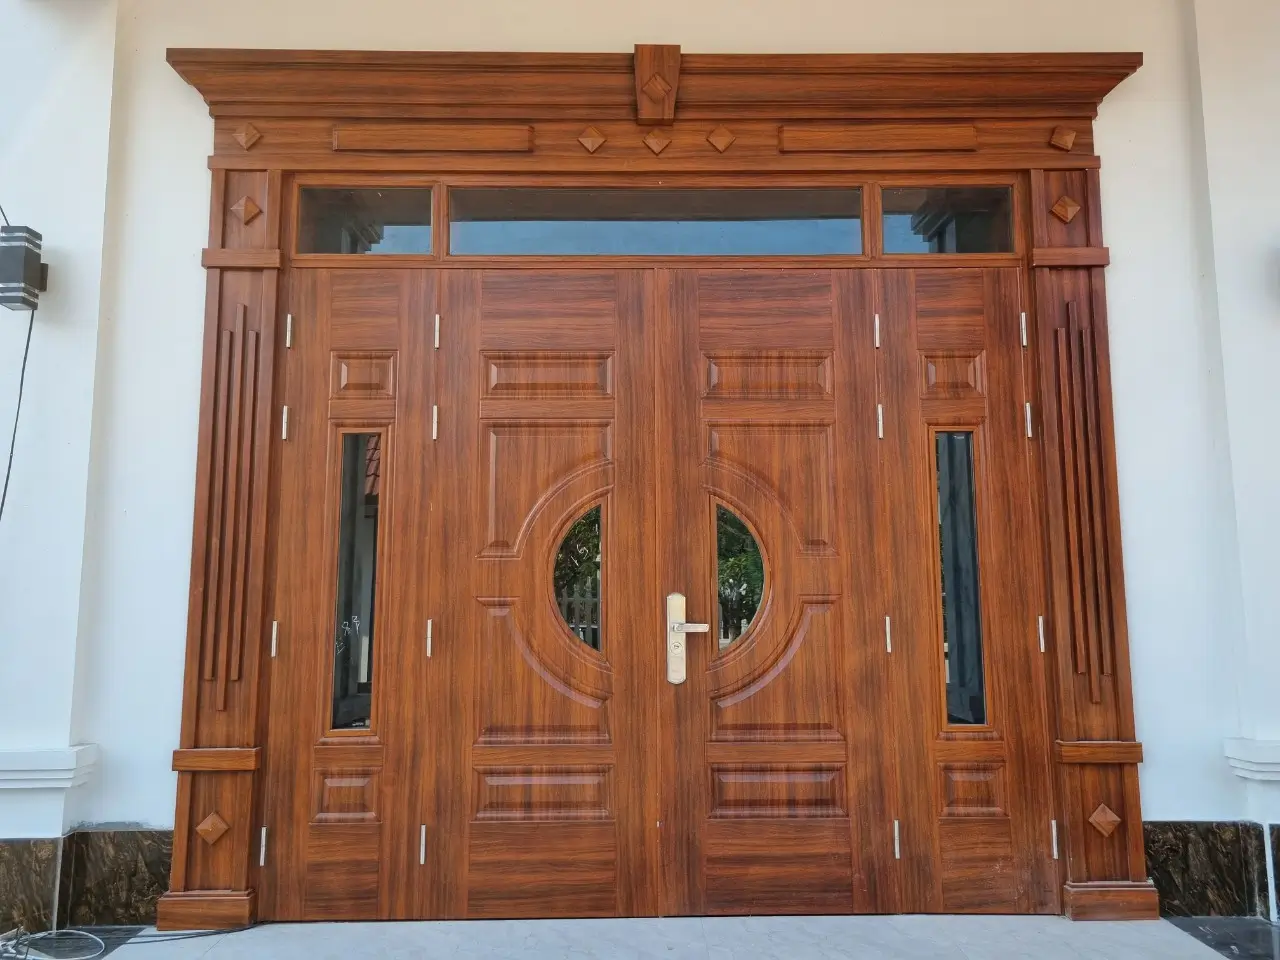 Mẫu cửa gỗ 4 cánh mặt tiền đẹp với kích thước lệch thu hút người nhìn bởi sự phá cách